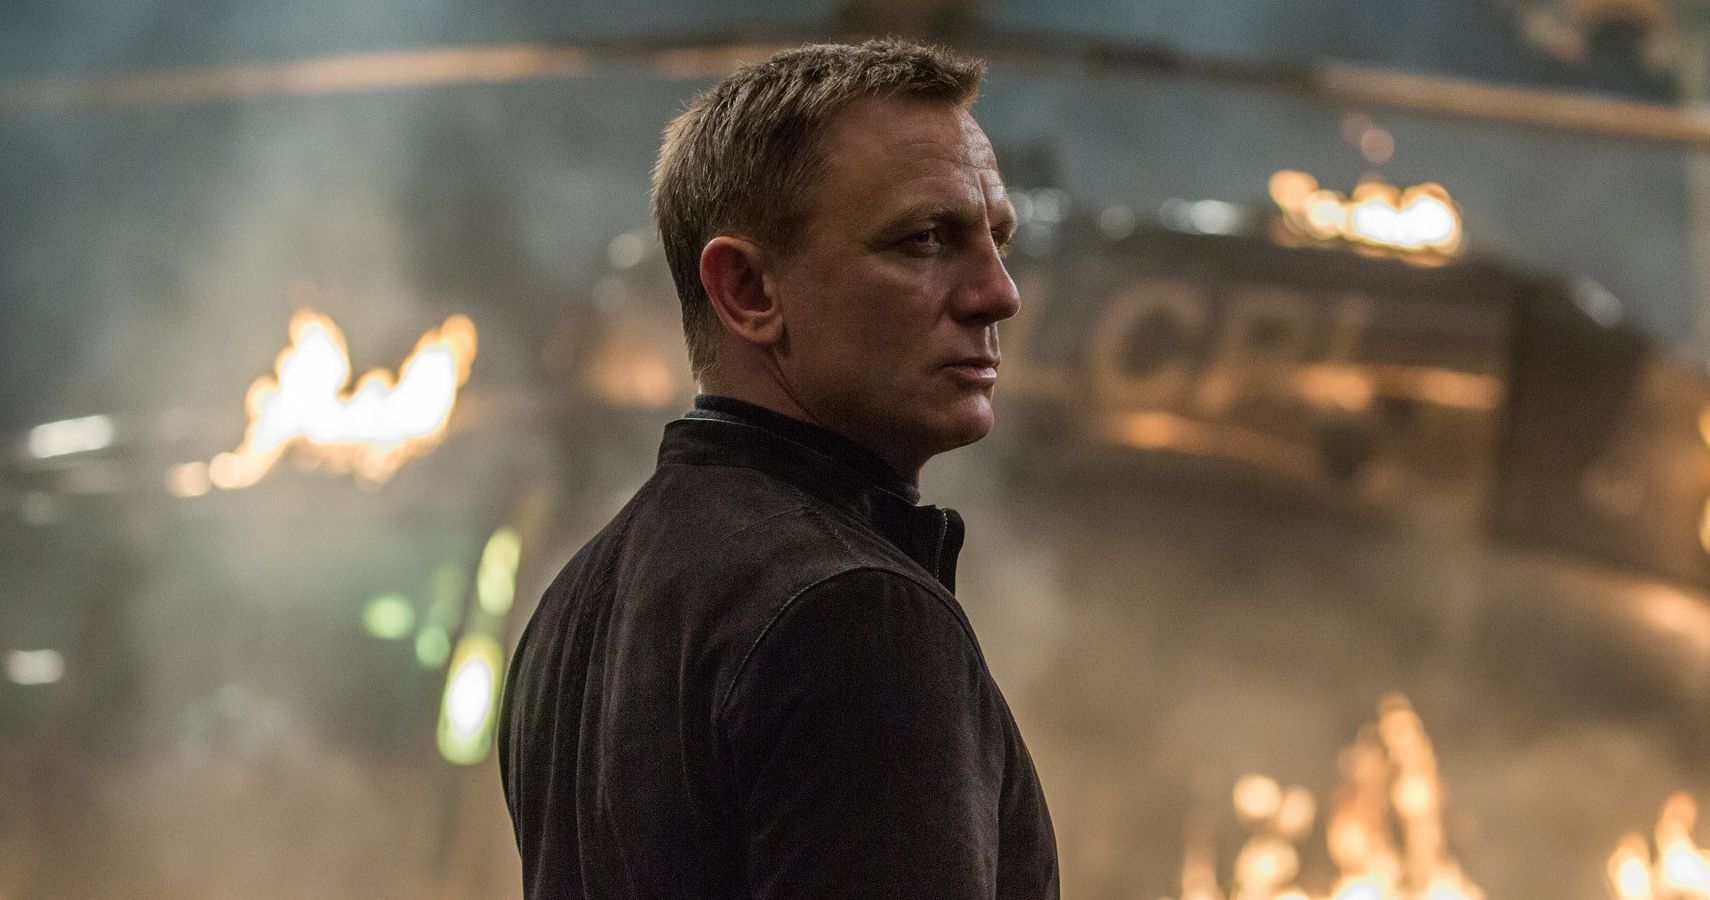 Daniel Craig Confirms Bond 25 Return